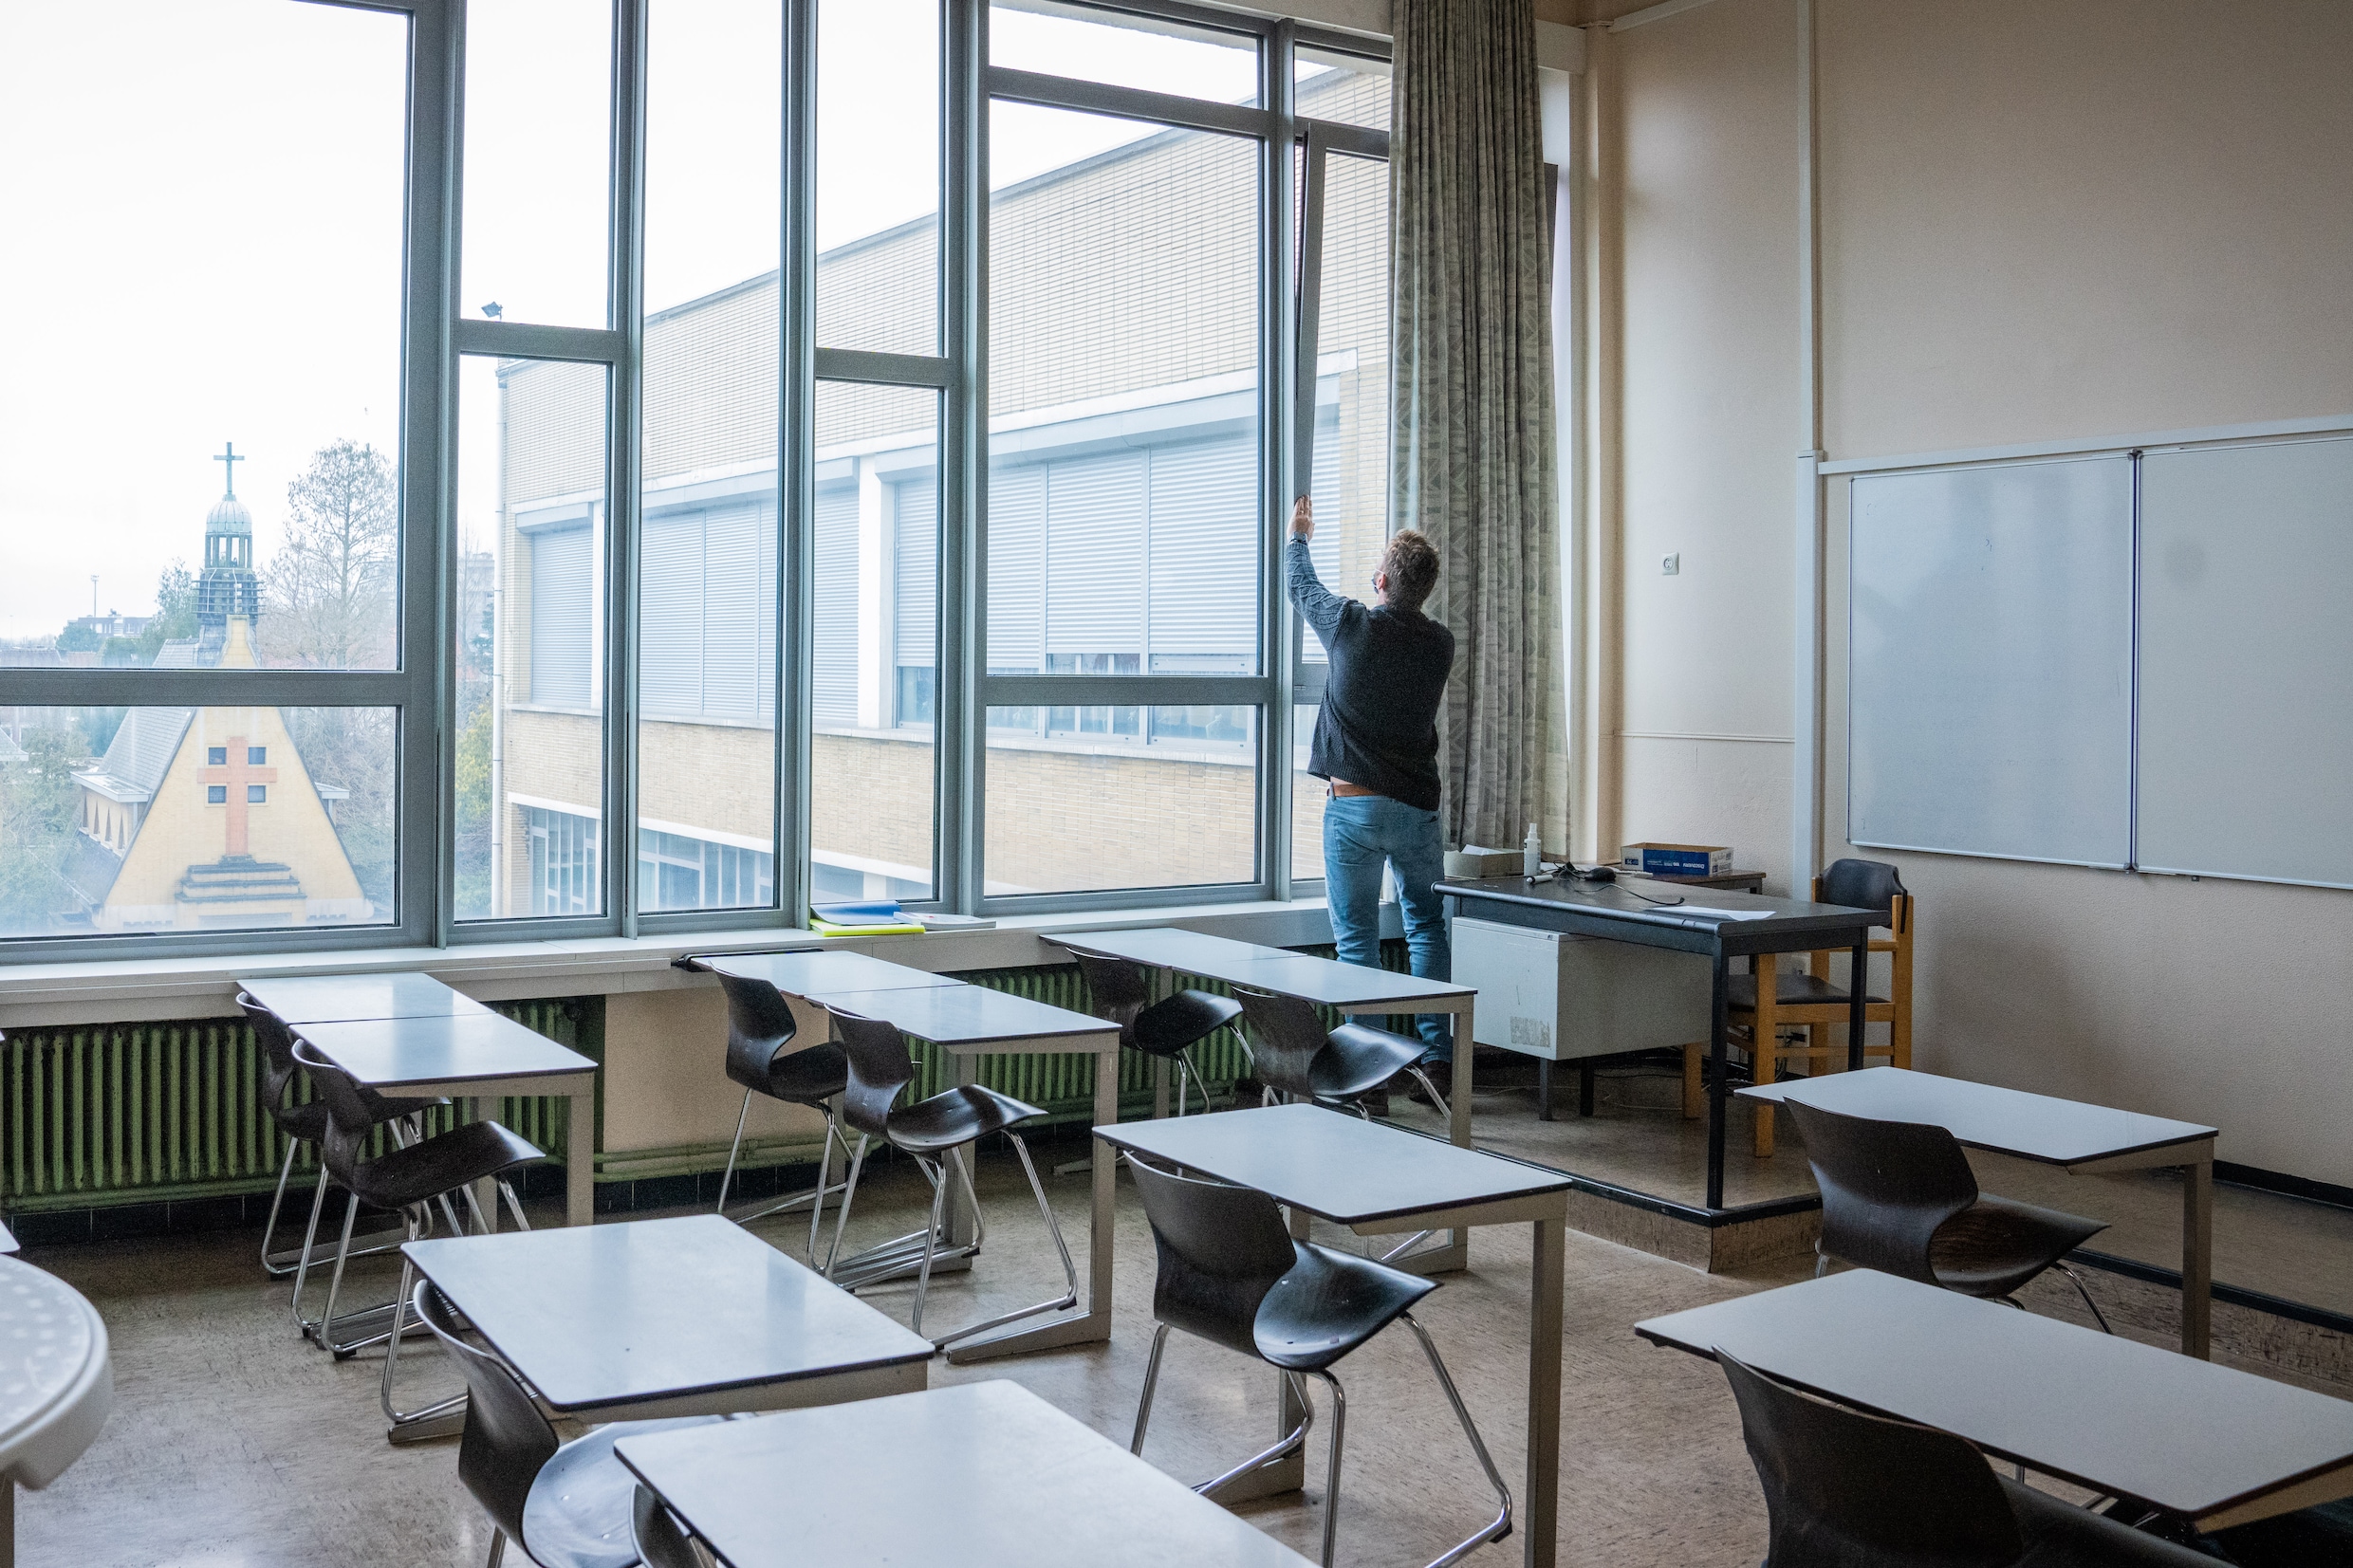 ‘Het is mijn vrees dat er lege gaten ontstaan op school’: leerkracht Latijn ziet hoe zijn vak stilaan uitsterft